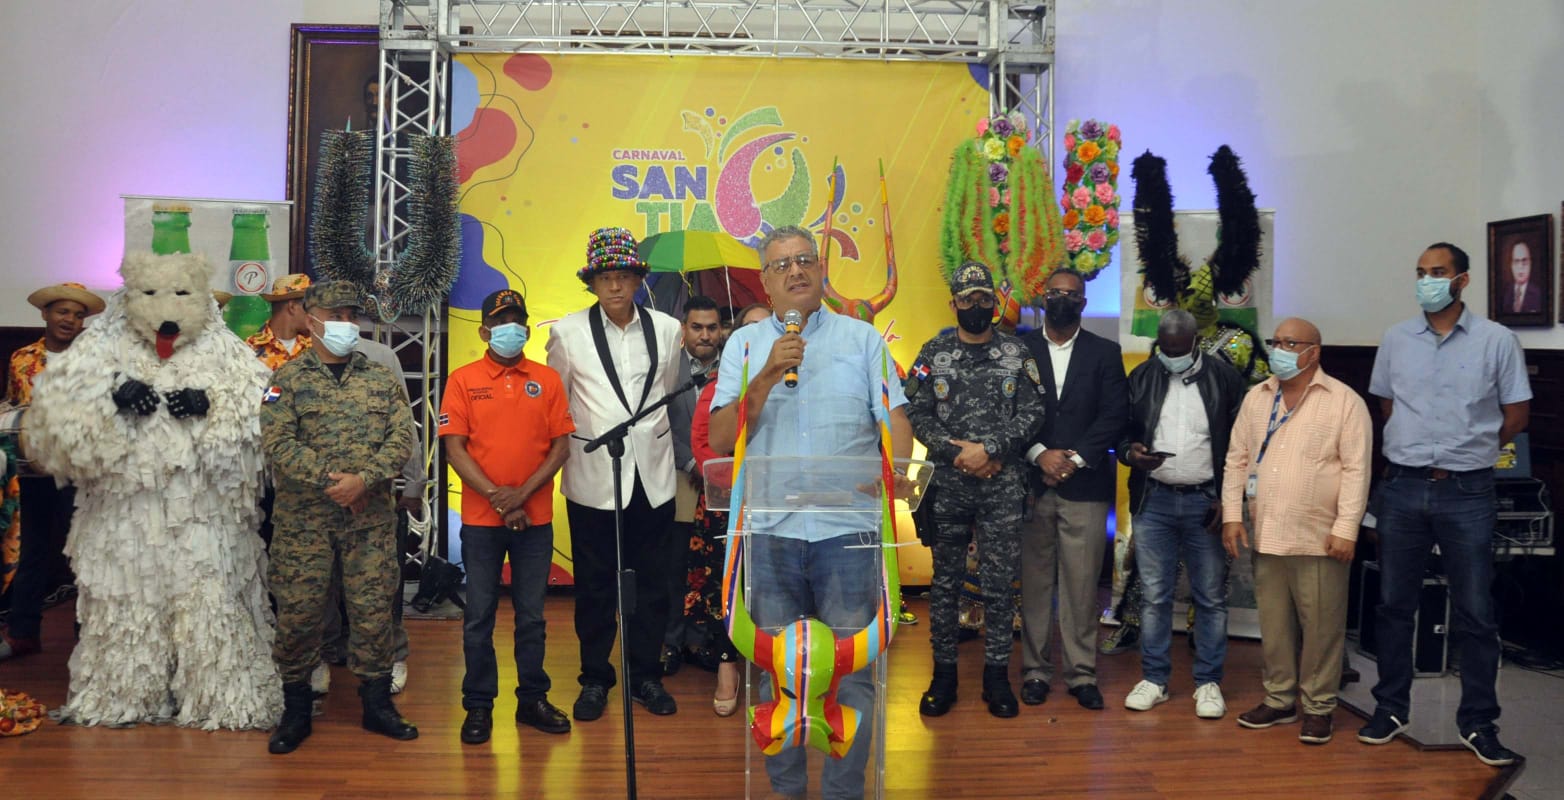 Carnaval de Santiago 2022 dedicado en memoria William Alemán